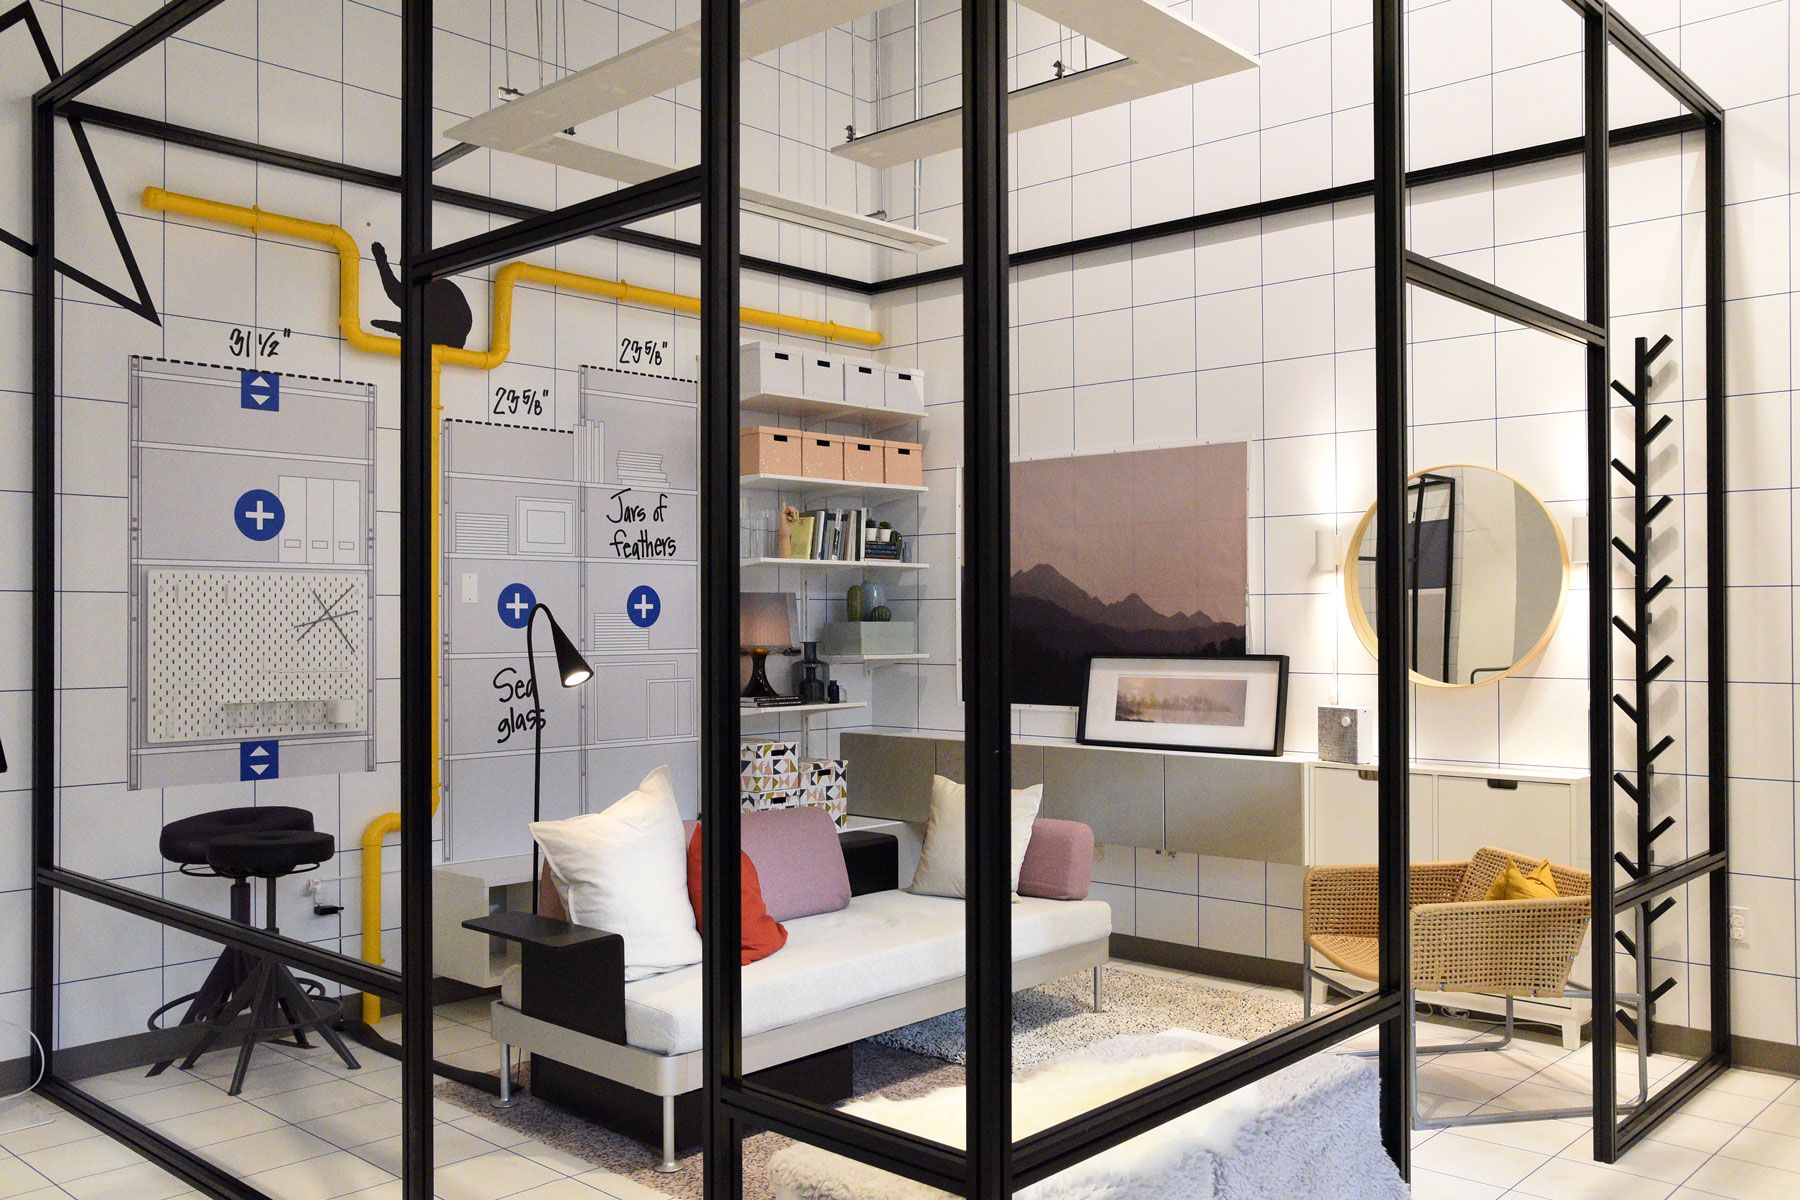 IKEA กำลังเปิดร้านรูปแบบใหม่ในเมืองใหญ่—นี่คือสิ่งที่คุณสามารถคาดหวังได้